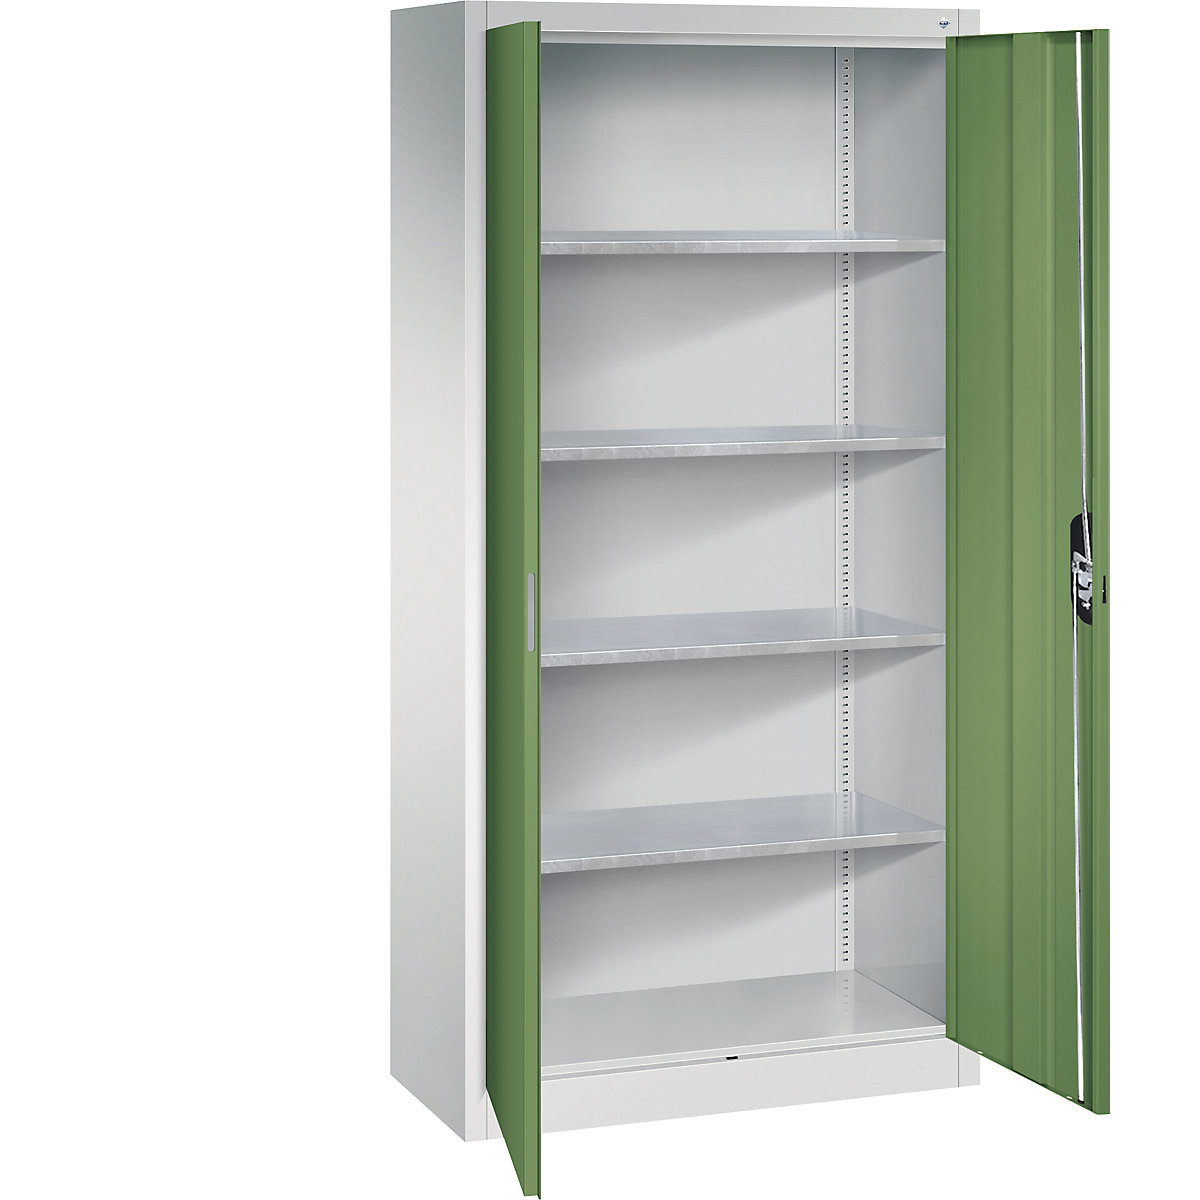 Workshop double door cupboard – C+P, HxWxD 1950 x 930 x 400 mm, light grey / reseda green-9